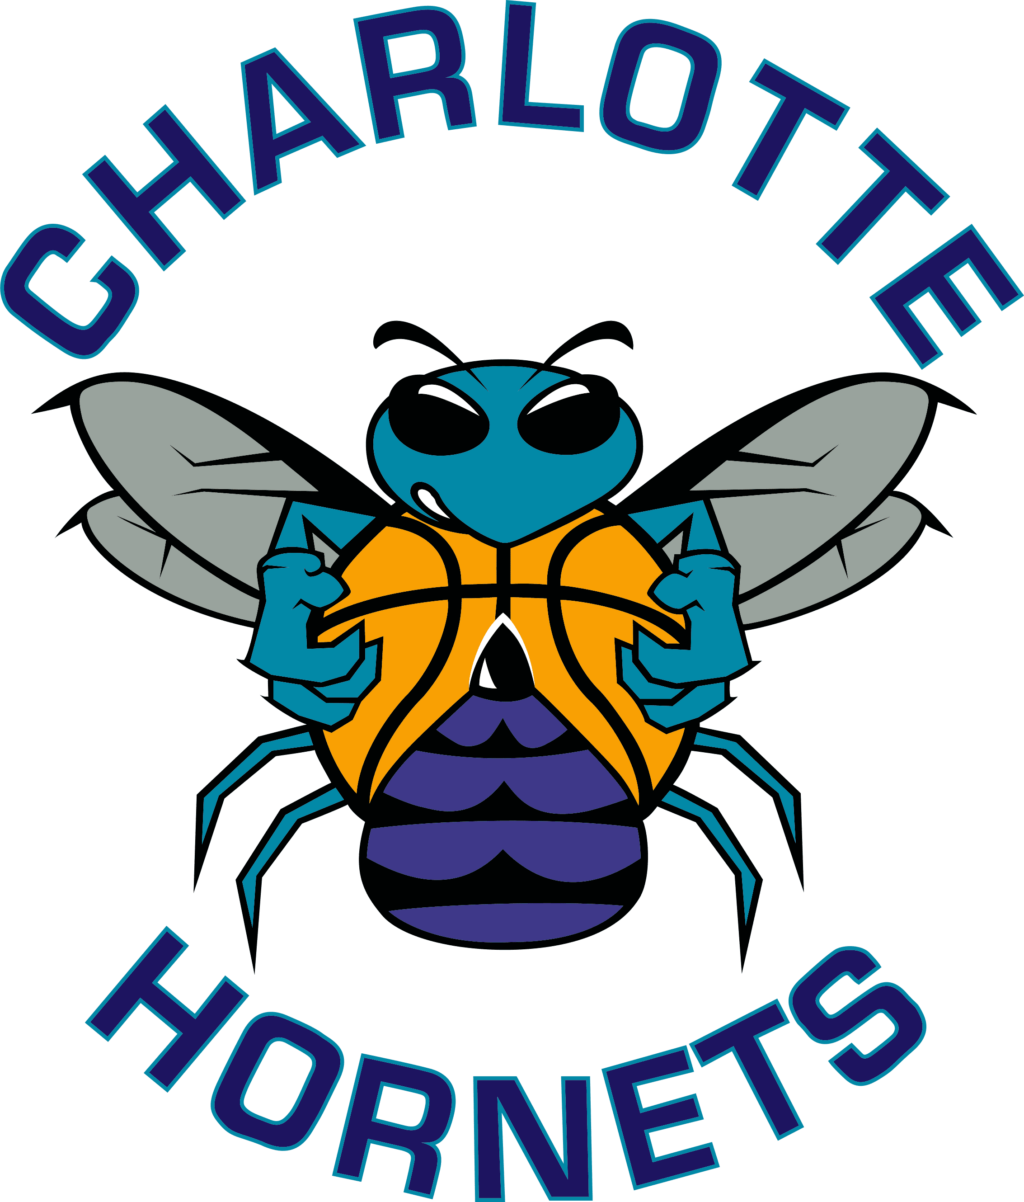 charlotte hornets 12 12 Styles NBA Charlotte Hornets Svg, Charlotte Hornets Svg, Charlotte Hornets Vector Logo, Charlotte Hornets Clipart, Charlotte Hornets png, Charlotte Hornets cricut files.